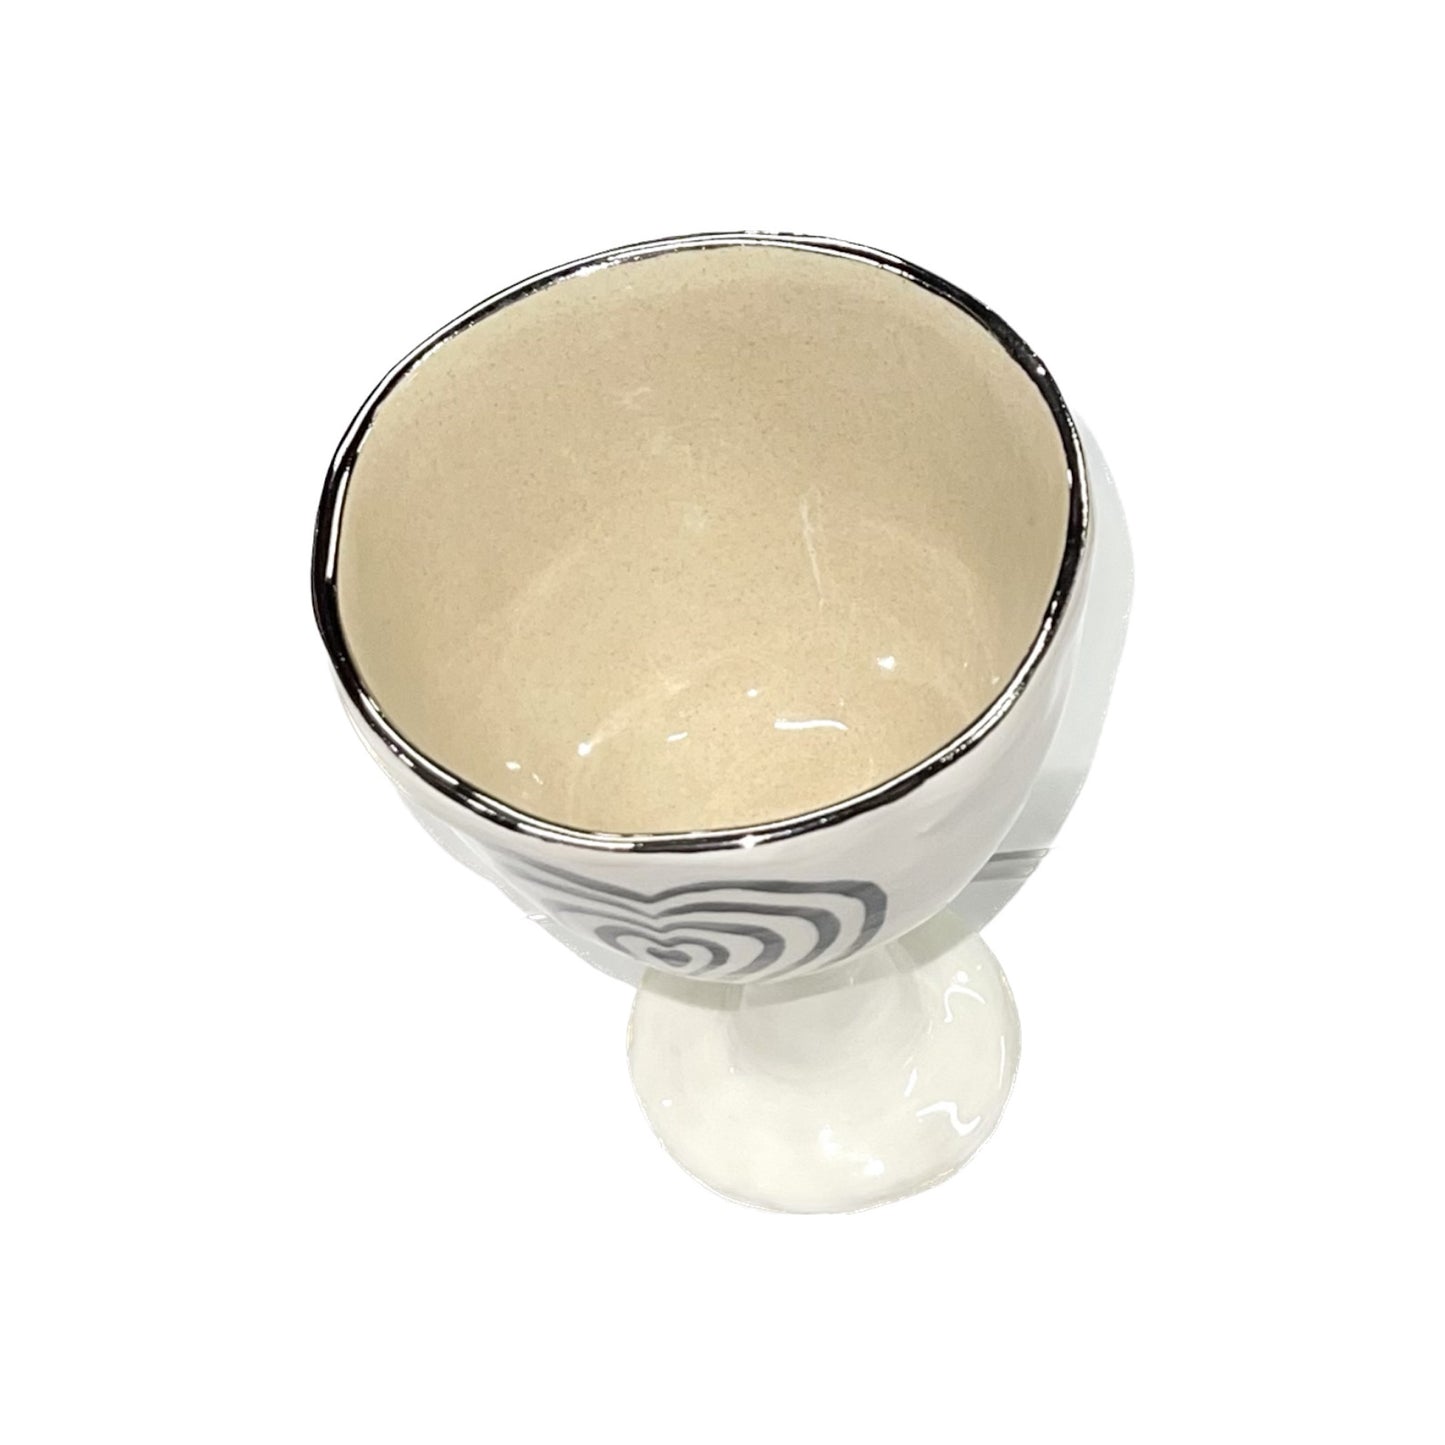 Heart bowl white - silver / ハートボウル ホワイト - シルバー / セラミック